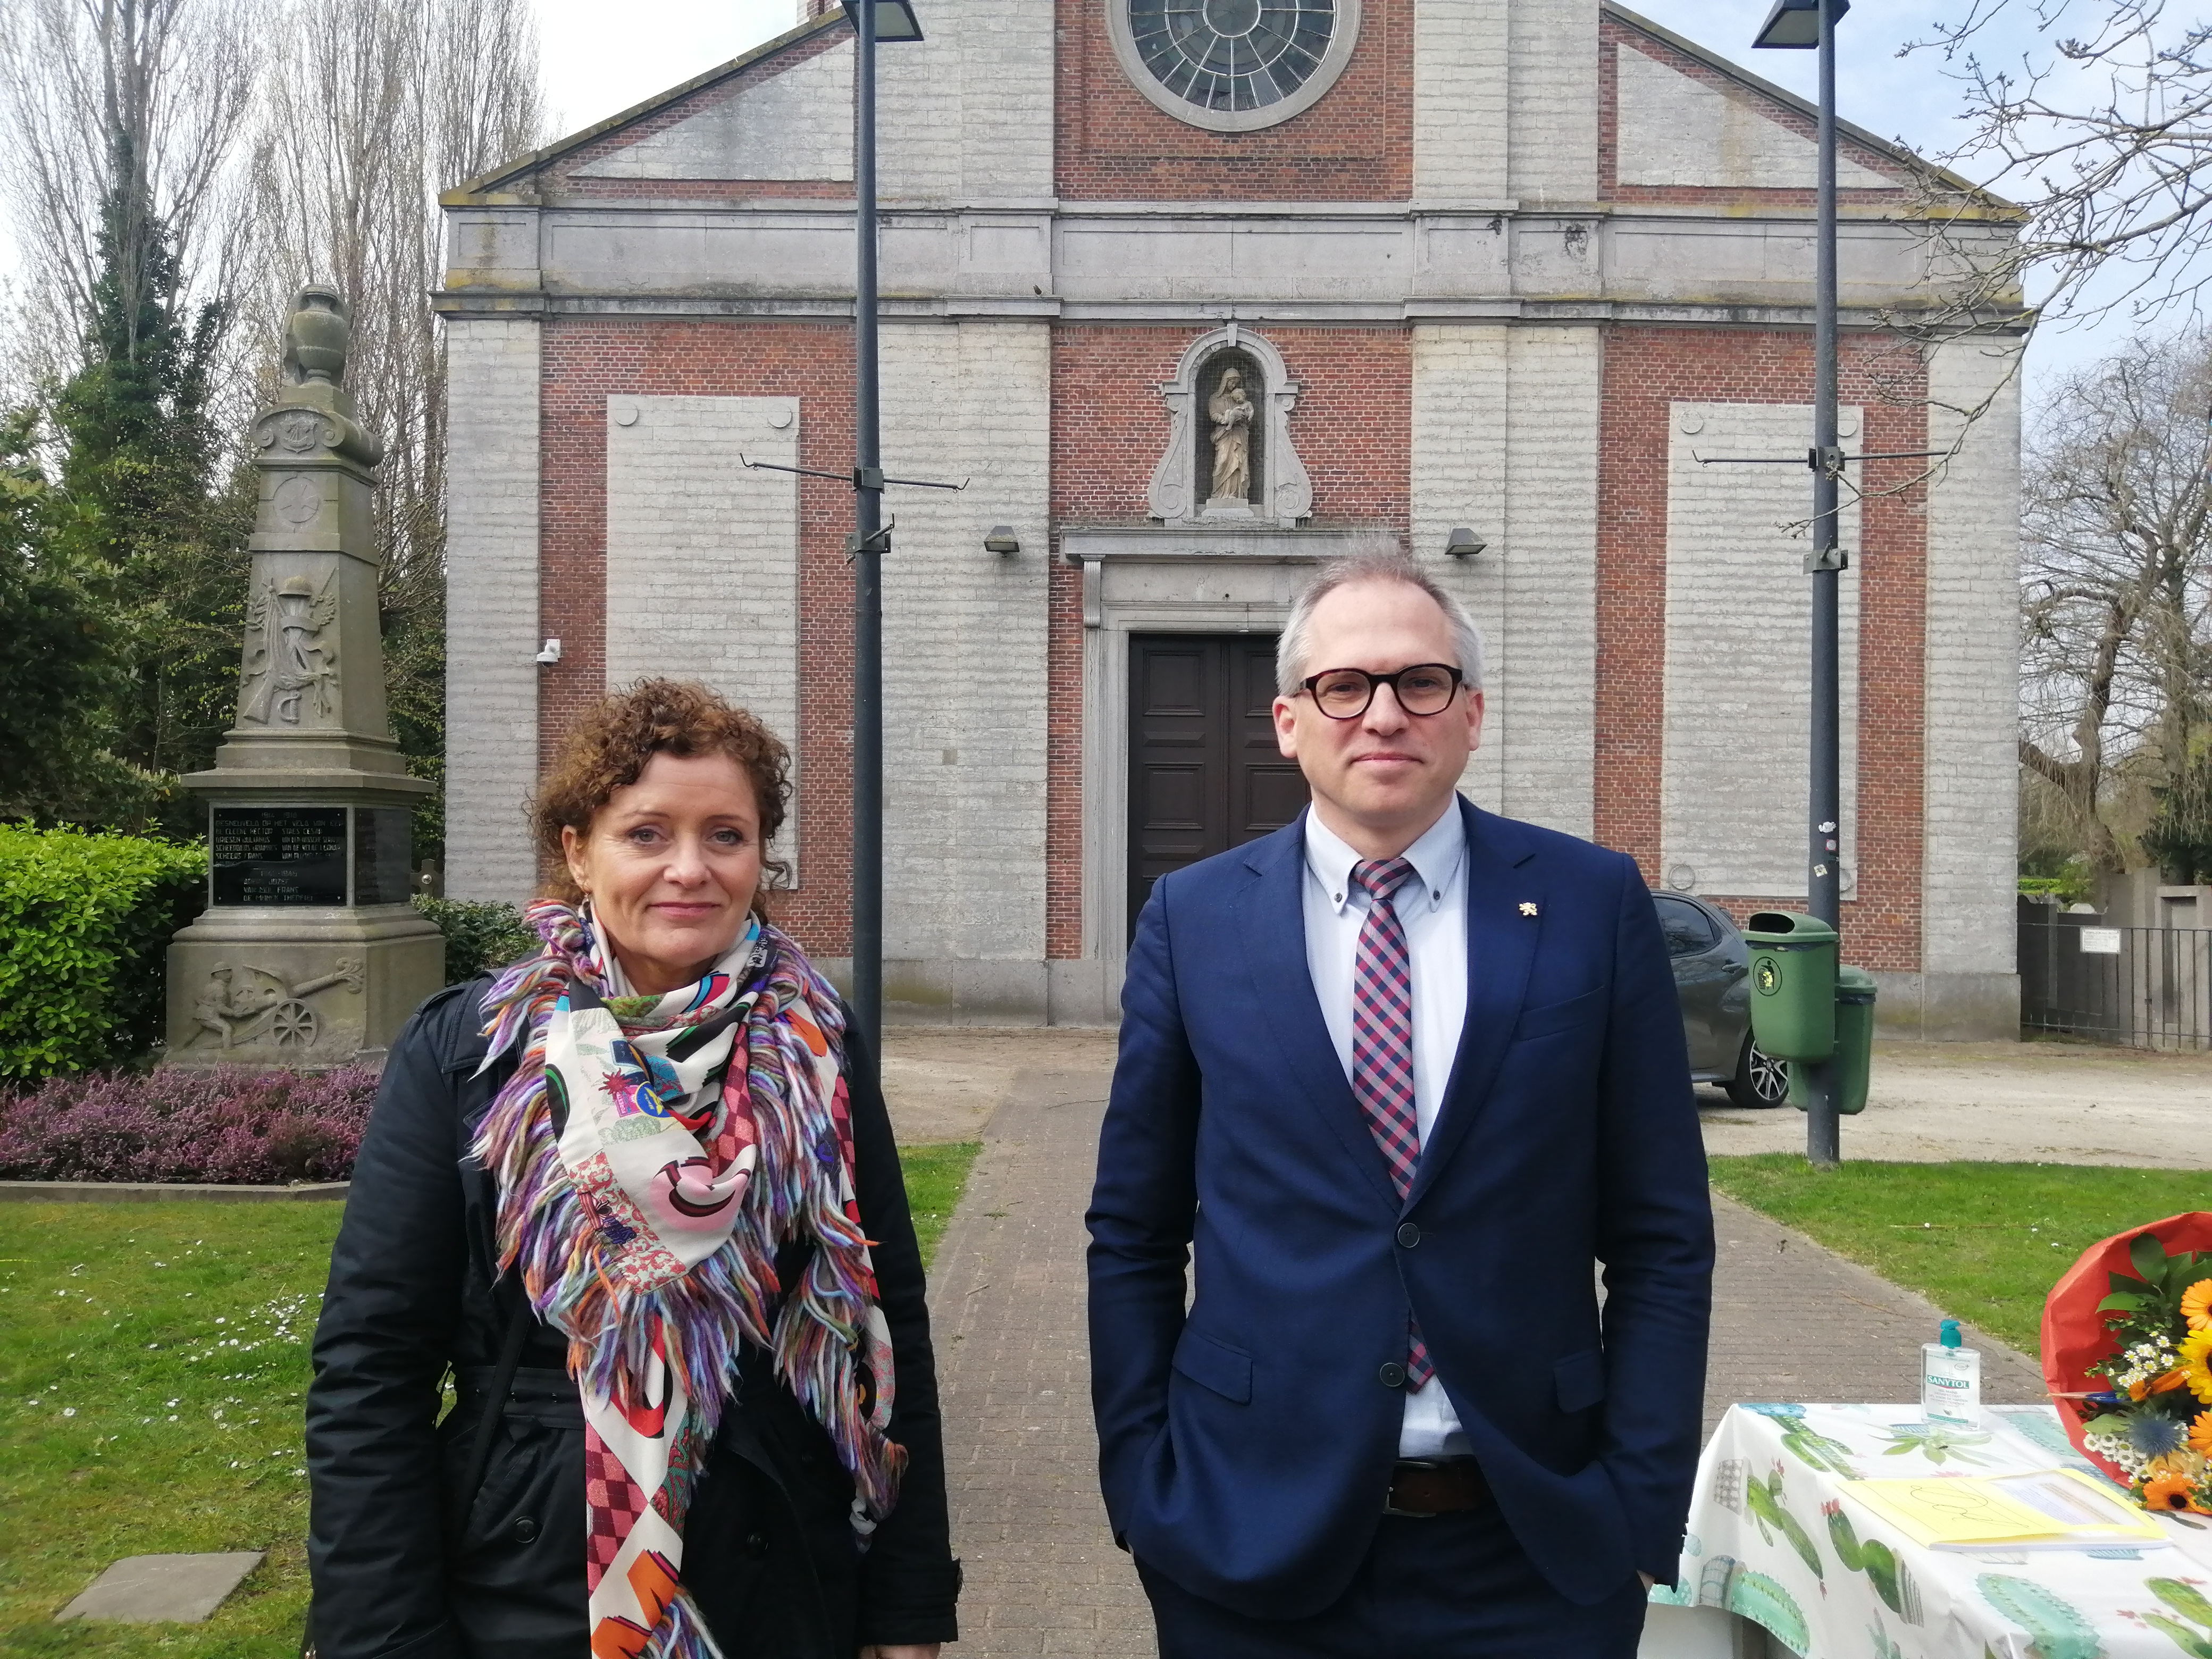 20220330 Doel Vlaams ministers Lydia Peeters en Matthias Diependaele